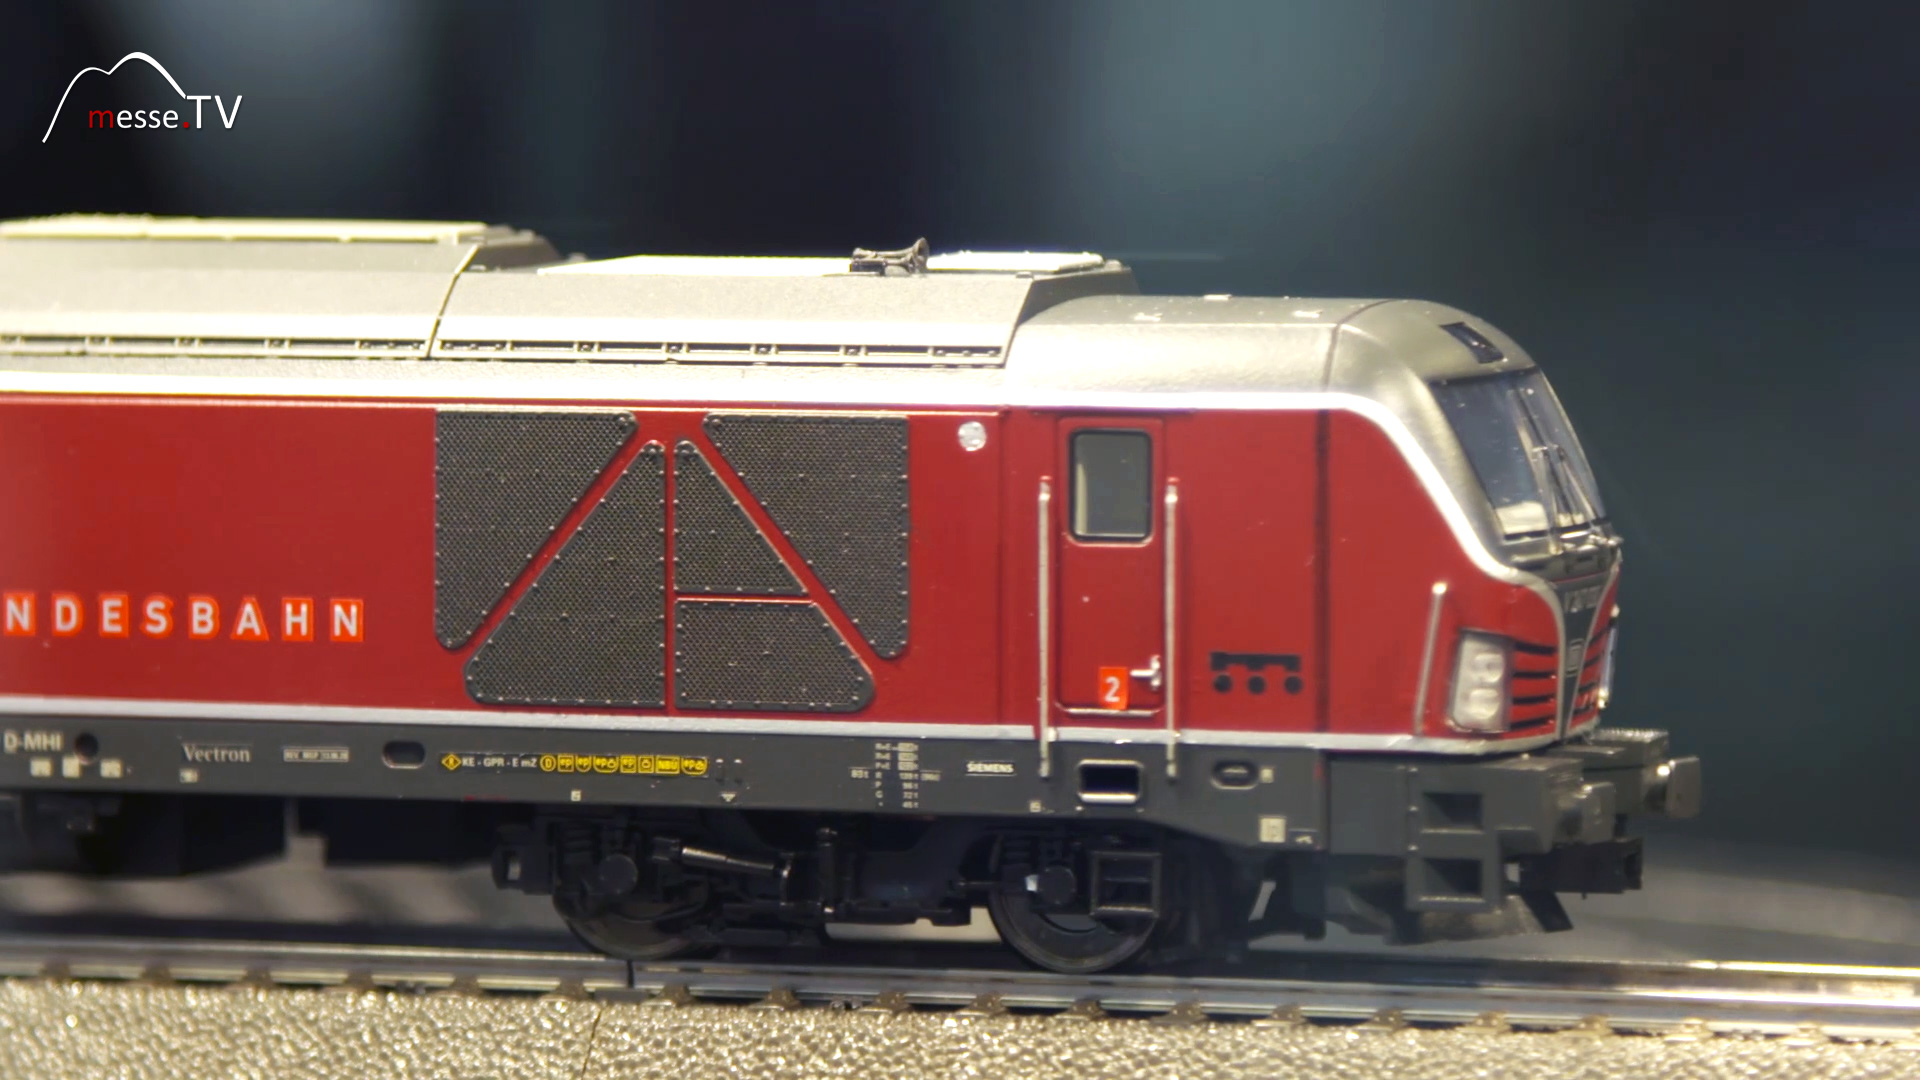 Maerklin locomotive special model retailer initiative